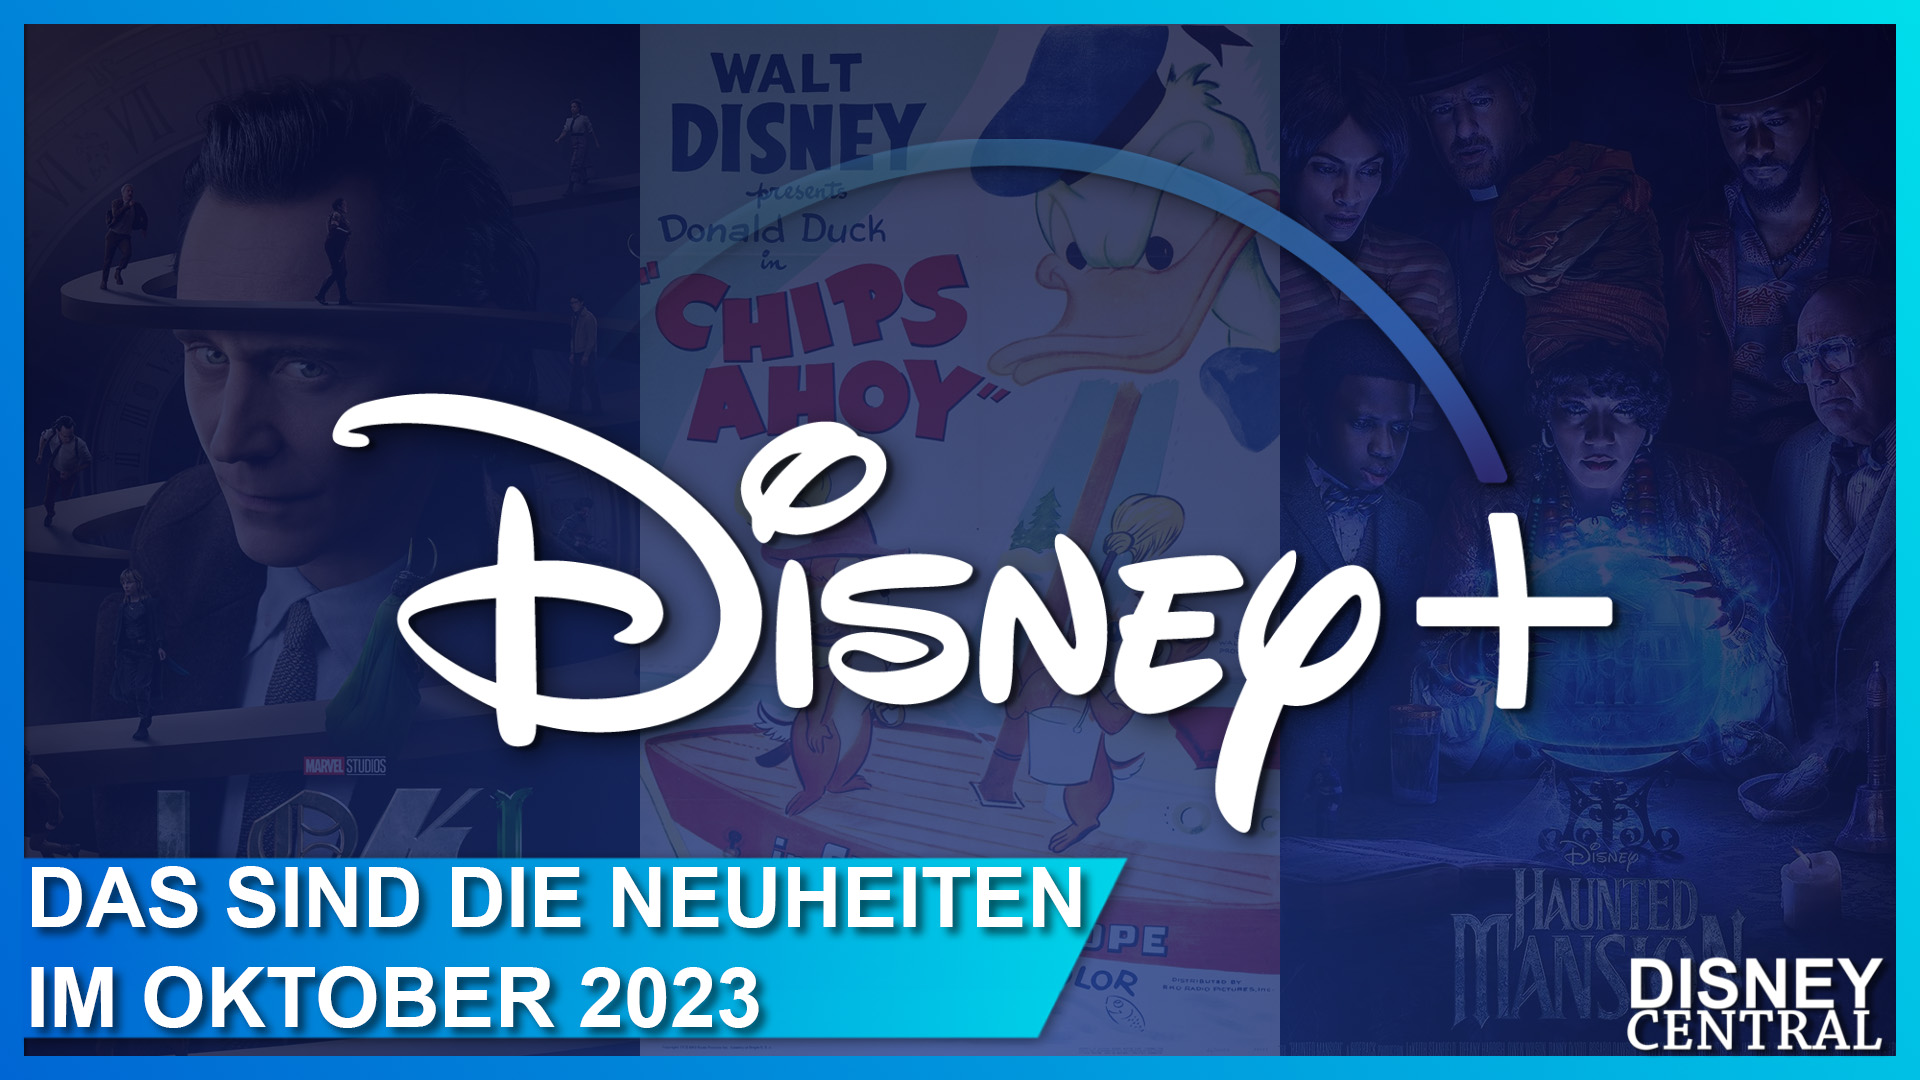 Disney+ Streaming-Neuheiten im Oktober 2023: z.B. Marvel Studios Loki - Staffel 2, Geistervilla und klassische Kurzfilme mit Micky Maus und Donald Duck zum großen Disney100 Jubiläum